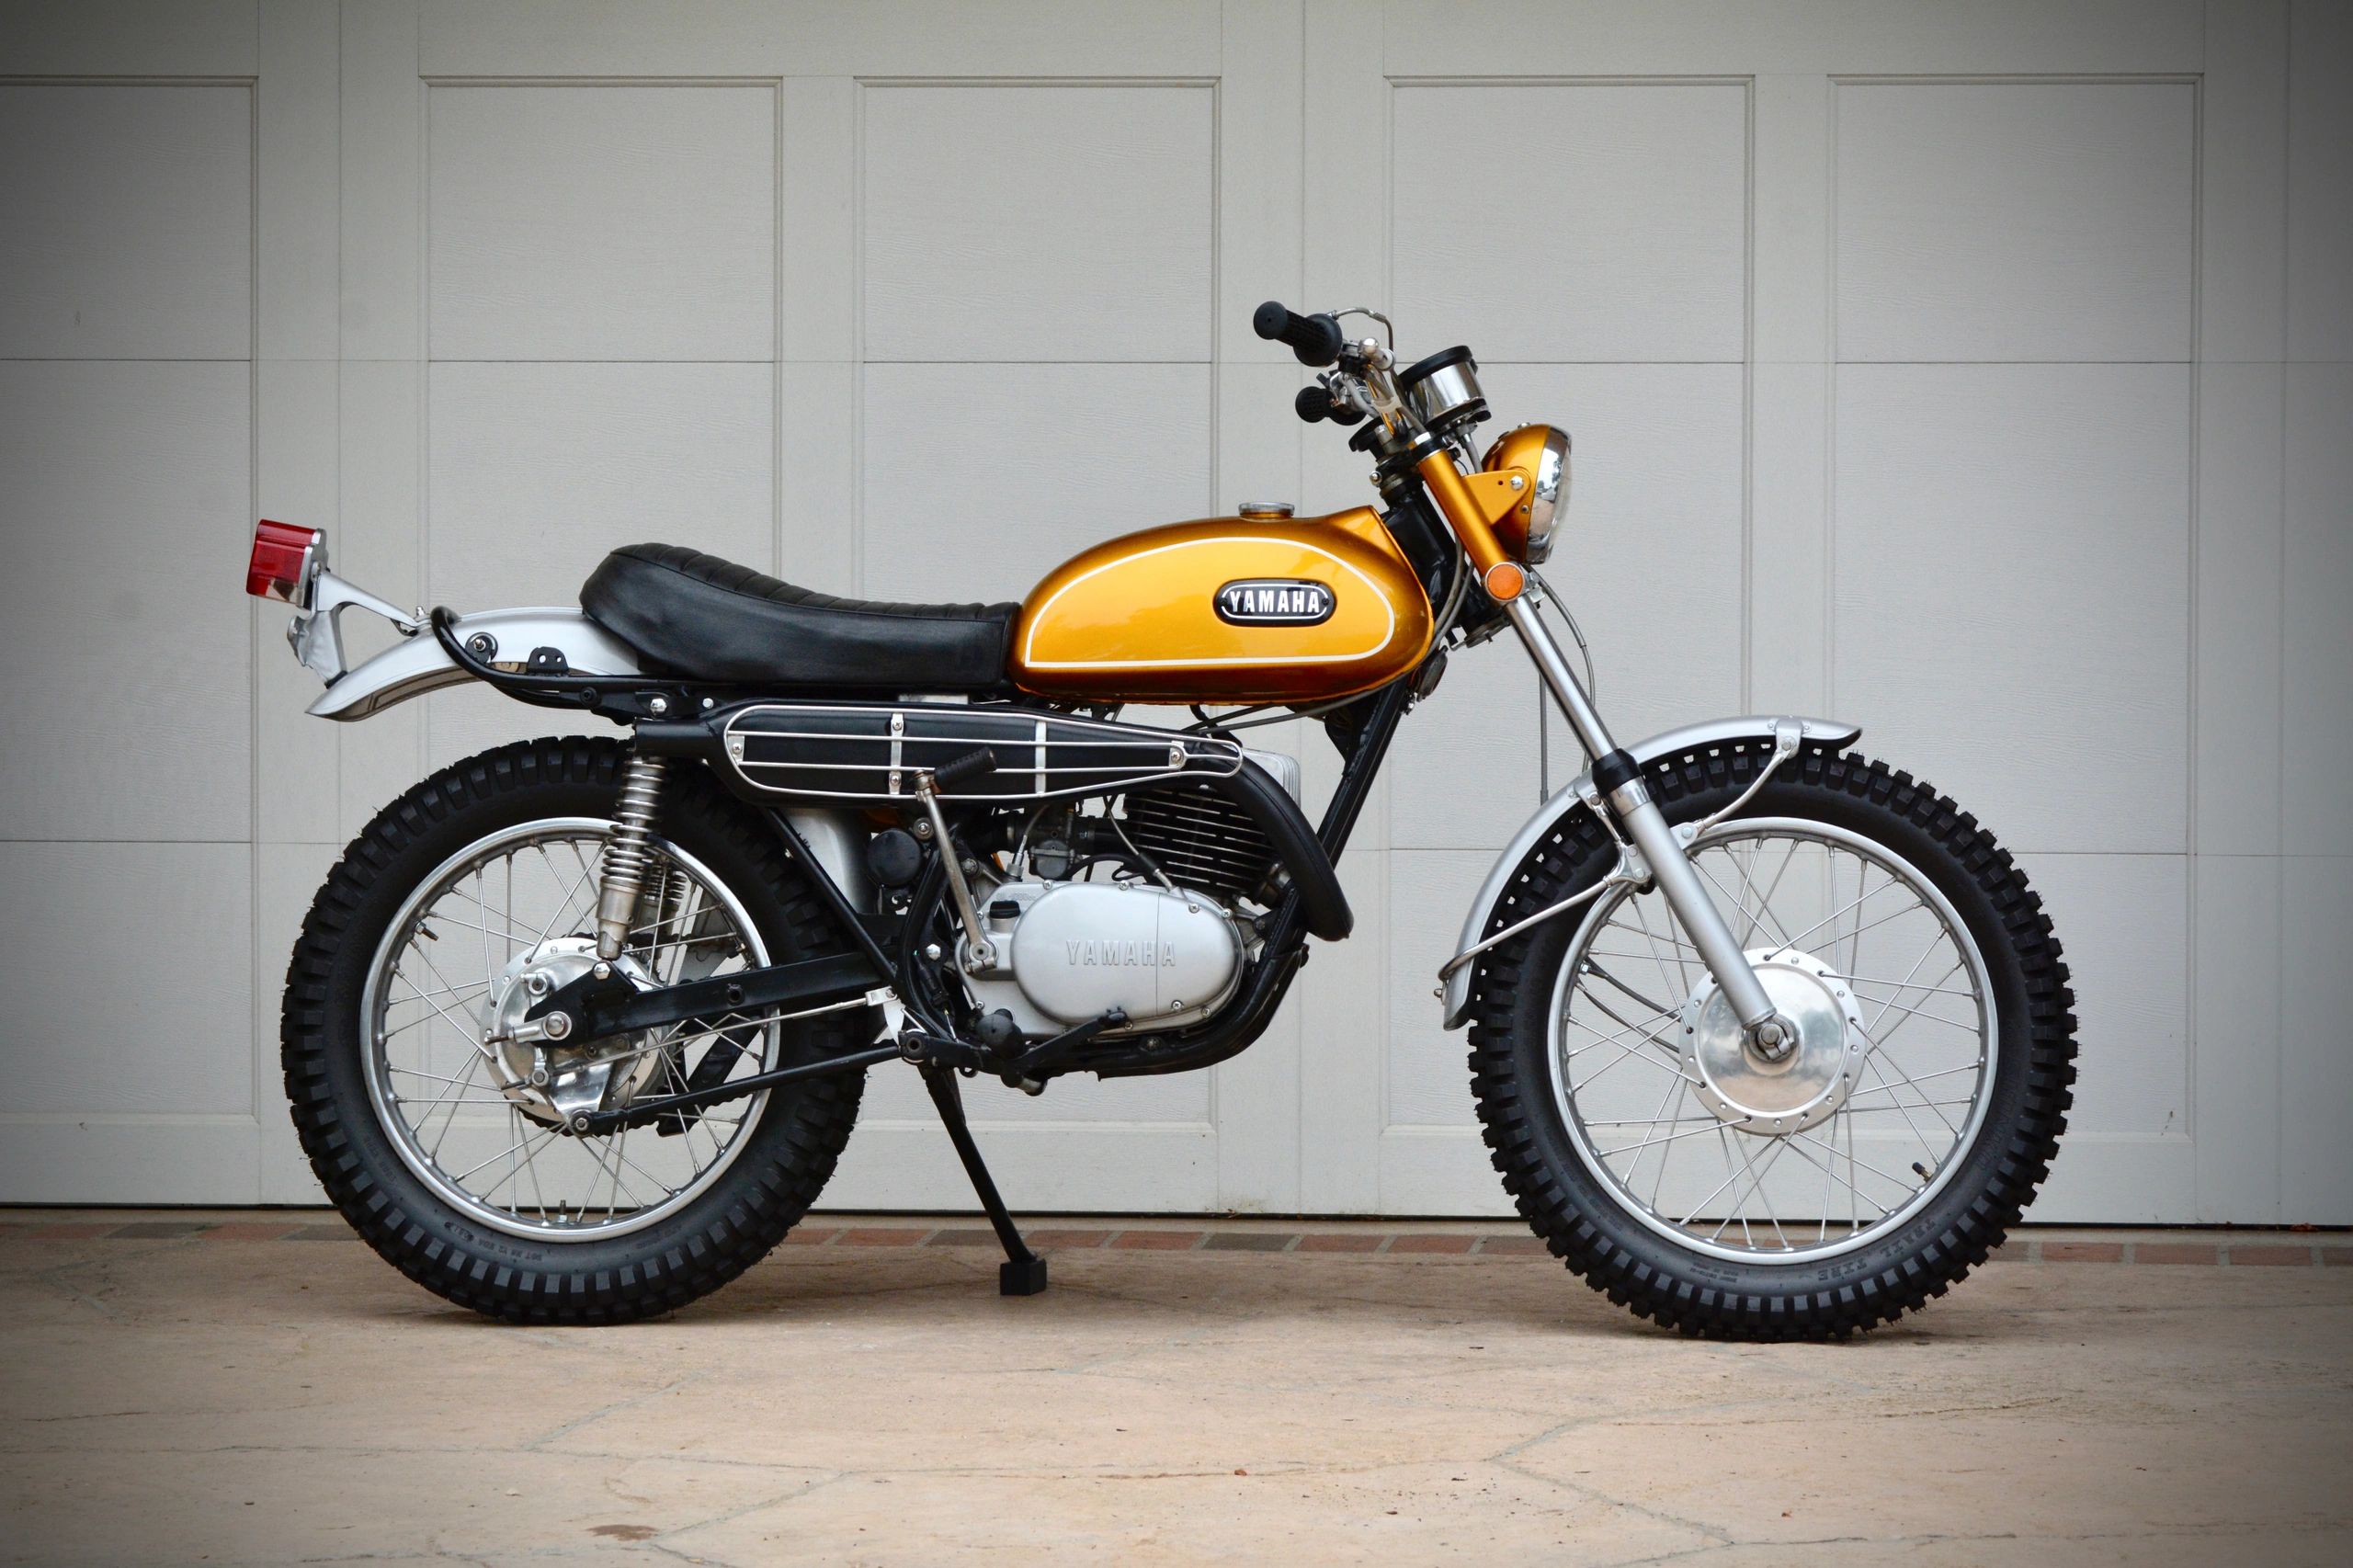 1969 Yamaha DT1 250 restored vintage enduro bike